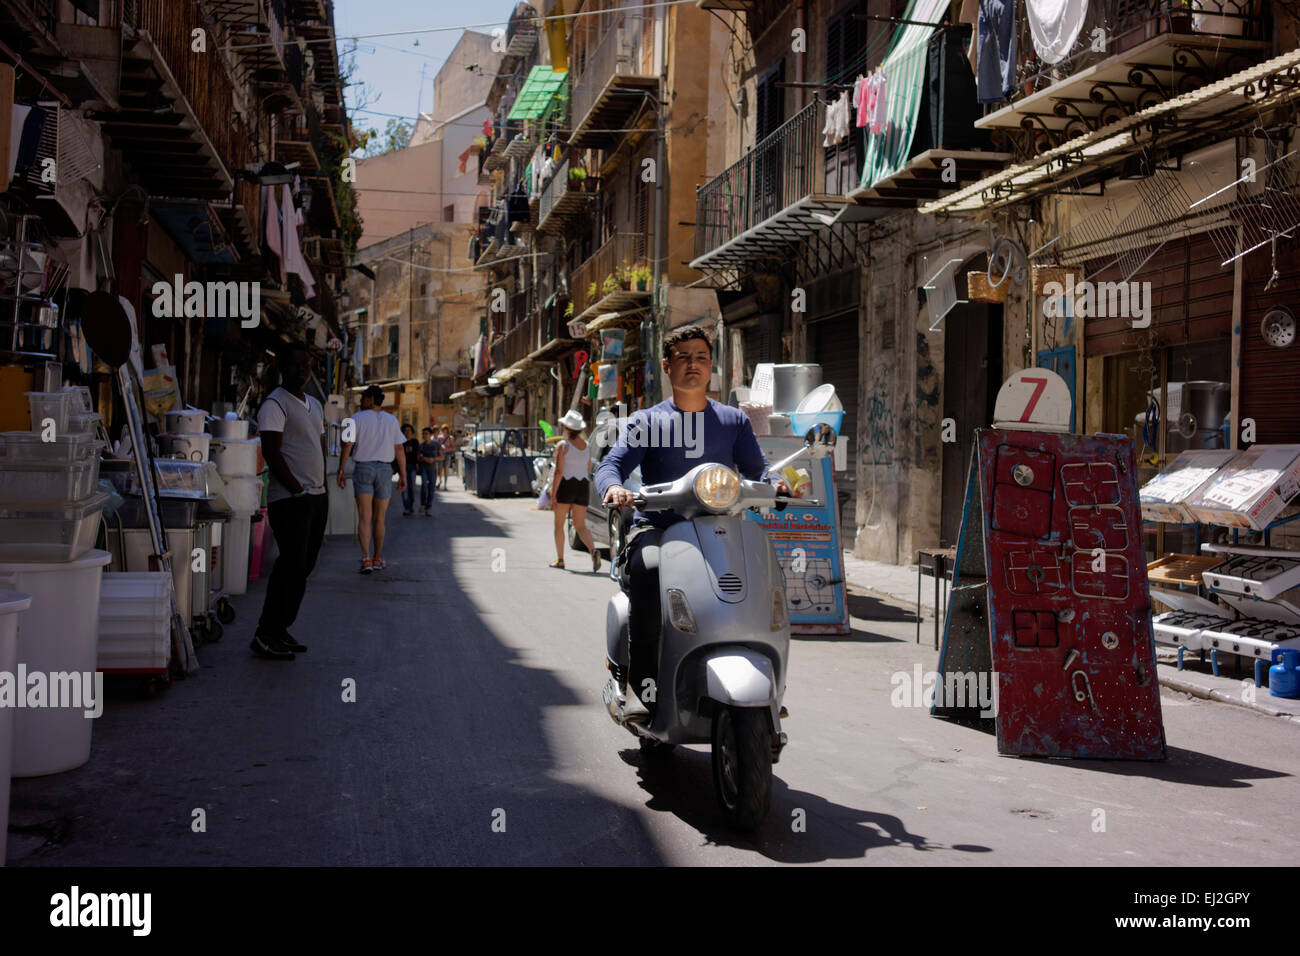 Escena callejera en Palermo, Sicilia. Foto de stock